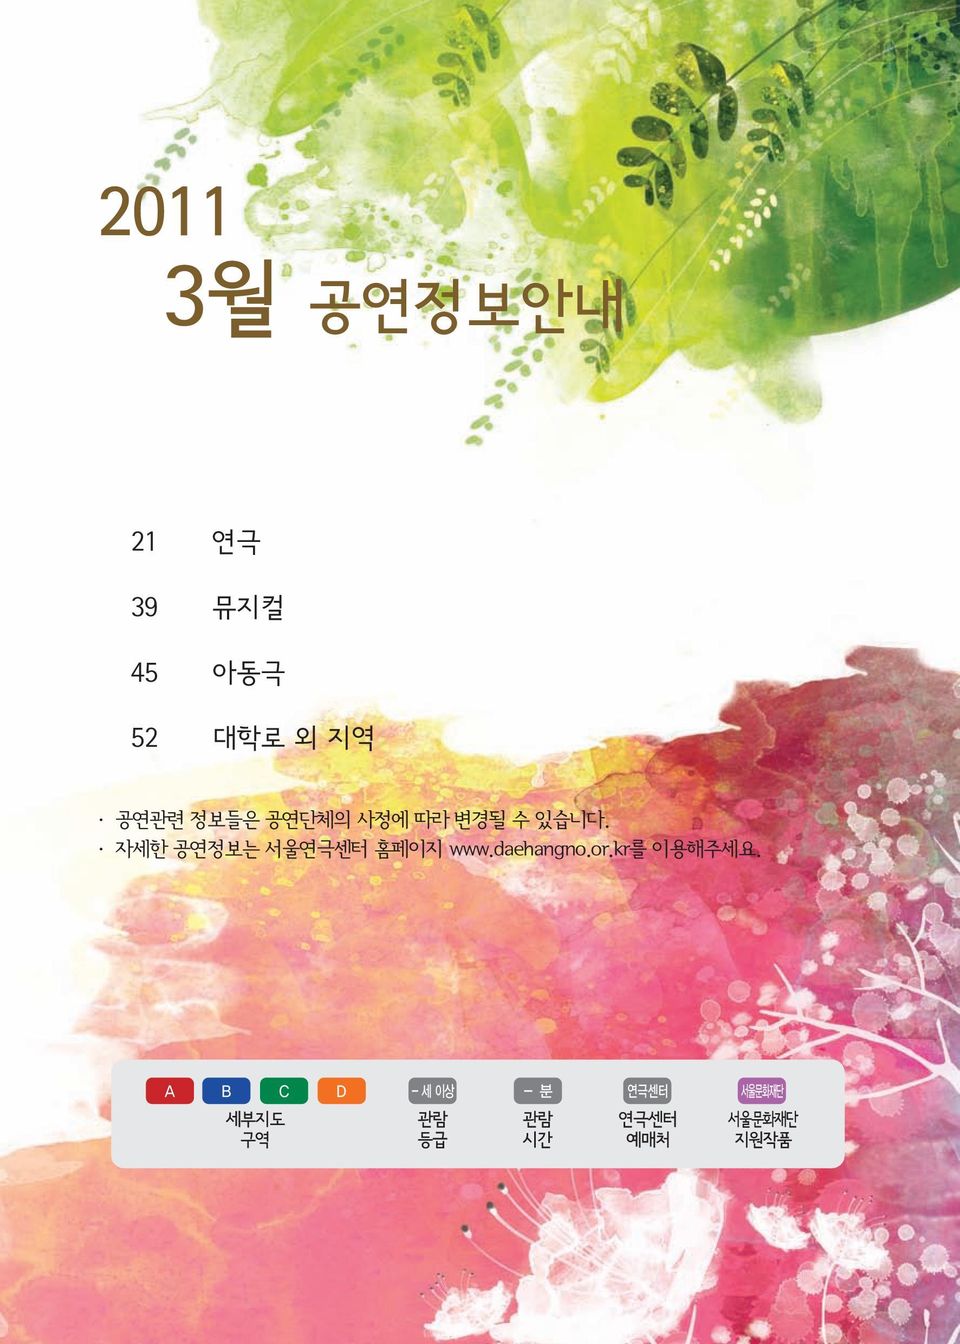 자세한 공연정보는 서울 홈페이지 www.daehangno.or.kr를 이용해주세요.